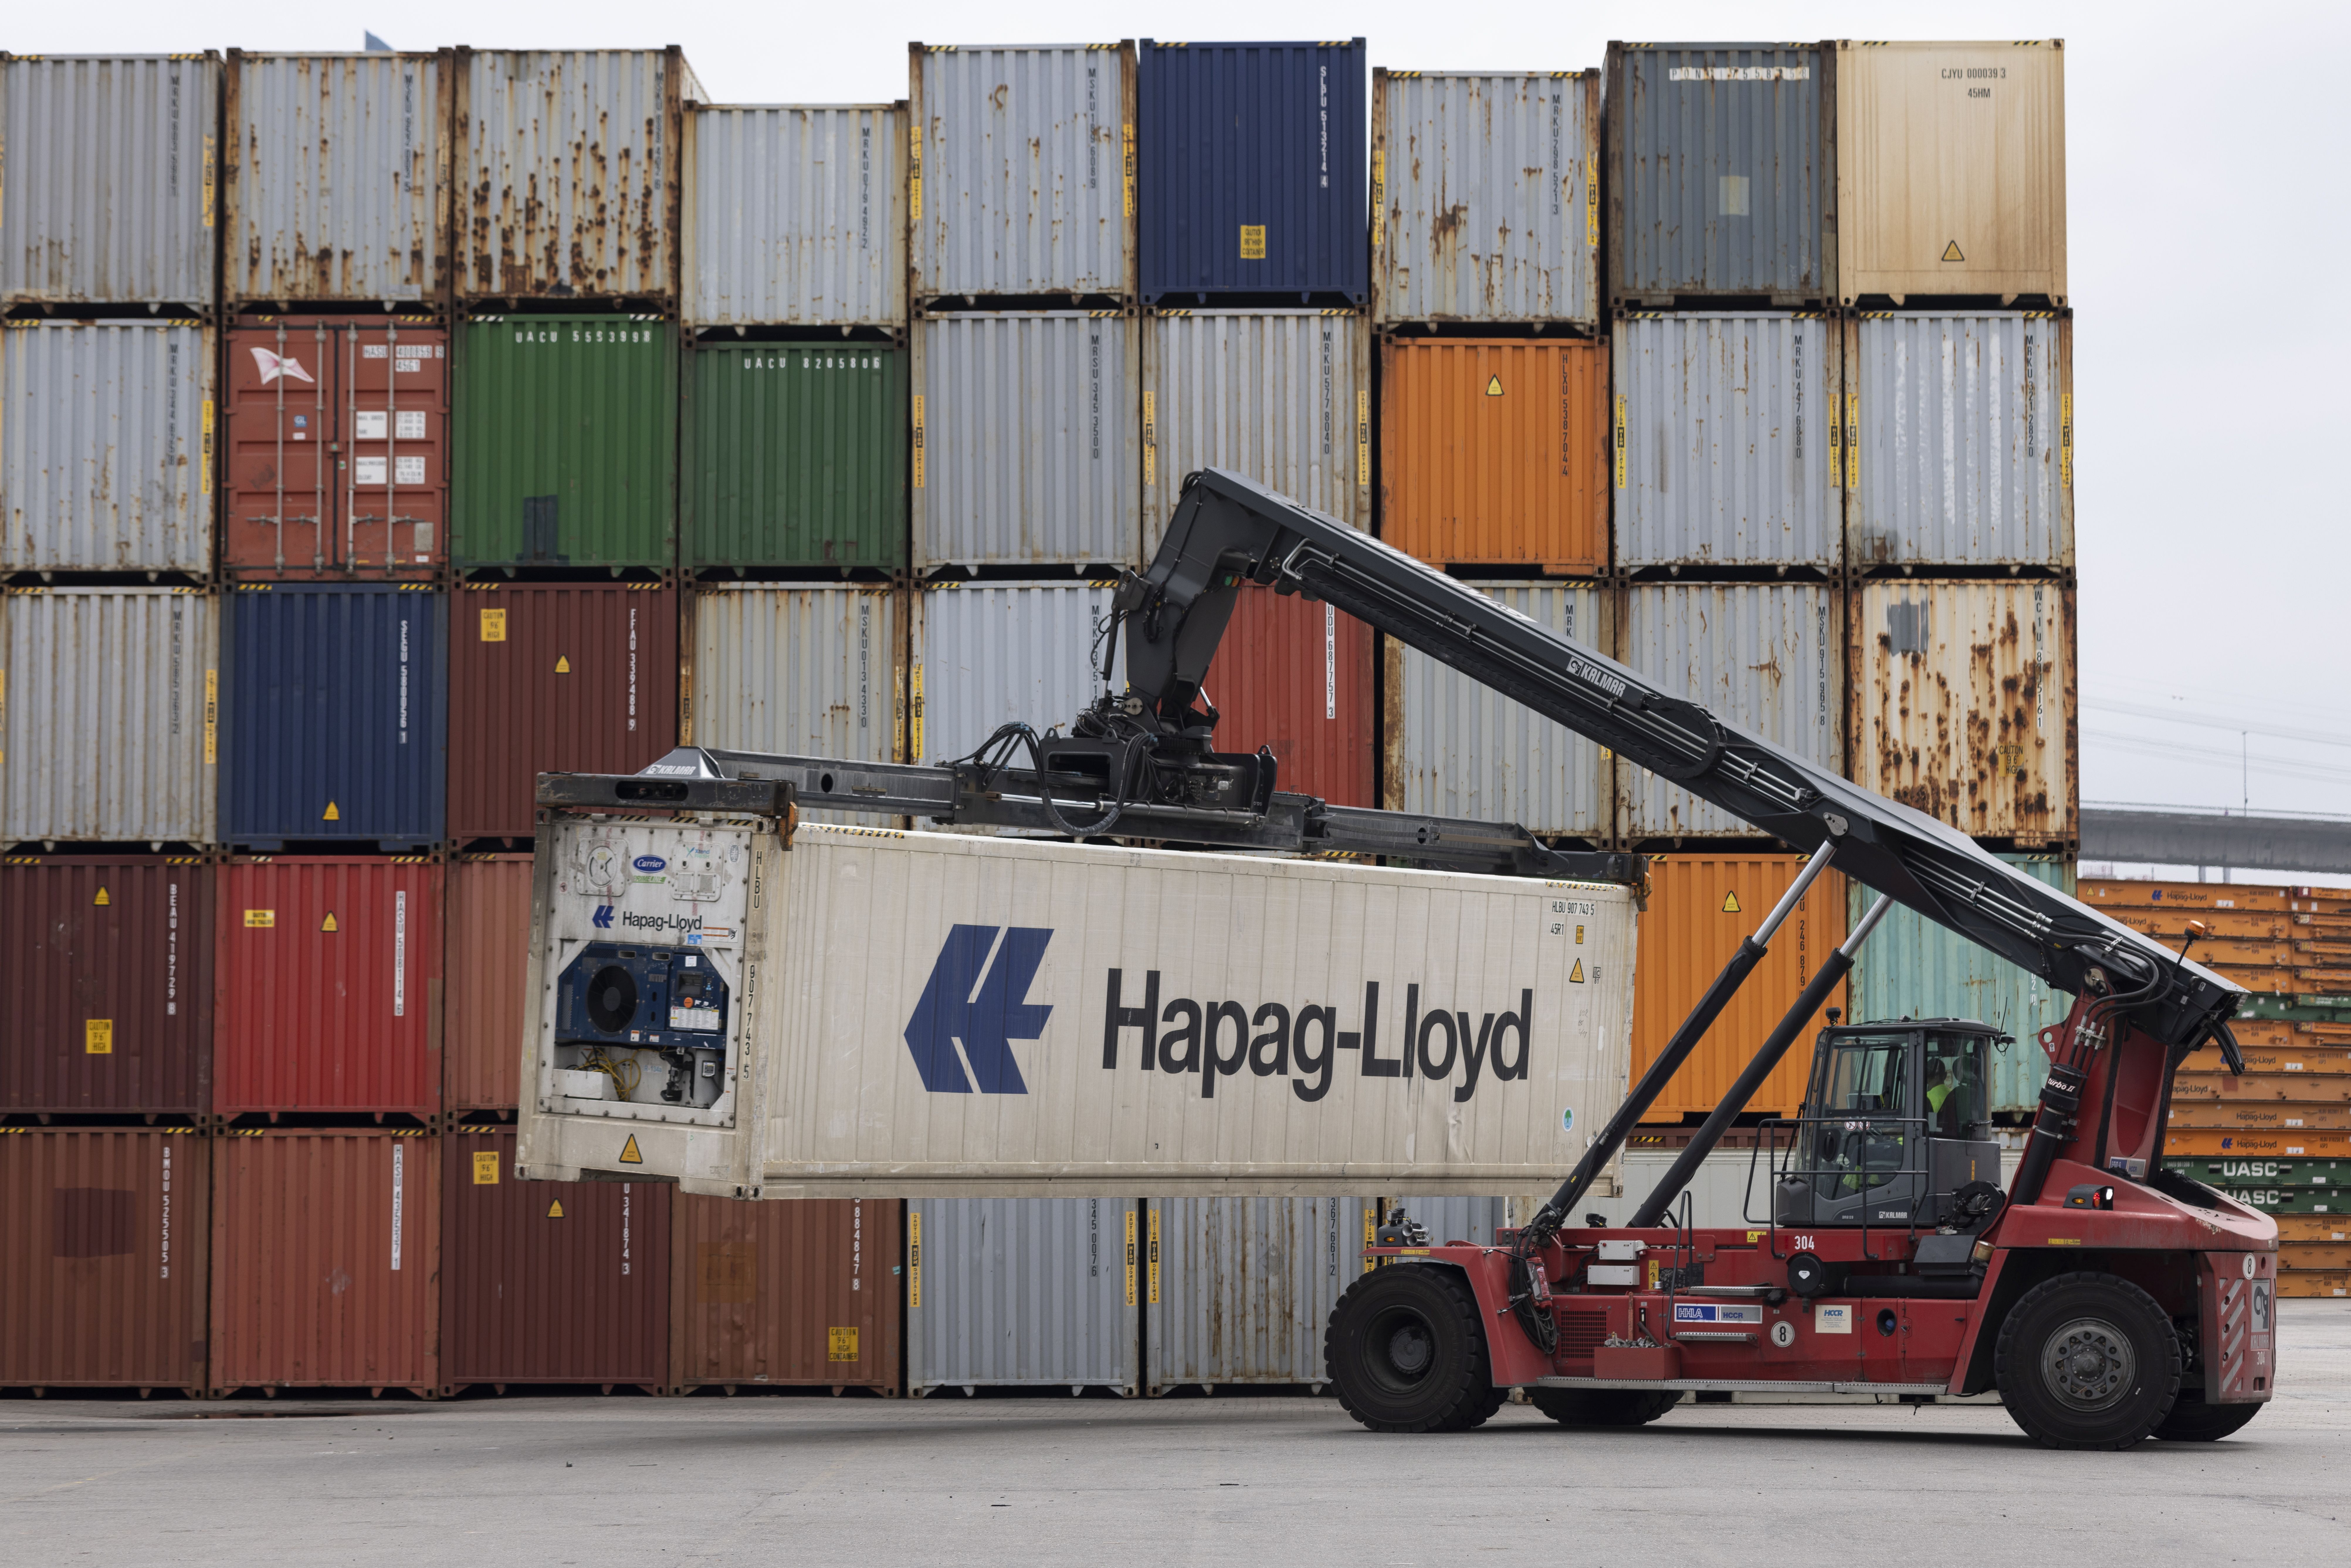 Schiffscontainer sind entscheidend für das Funktionieren internationaler Lieferketten und den Welthandel.